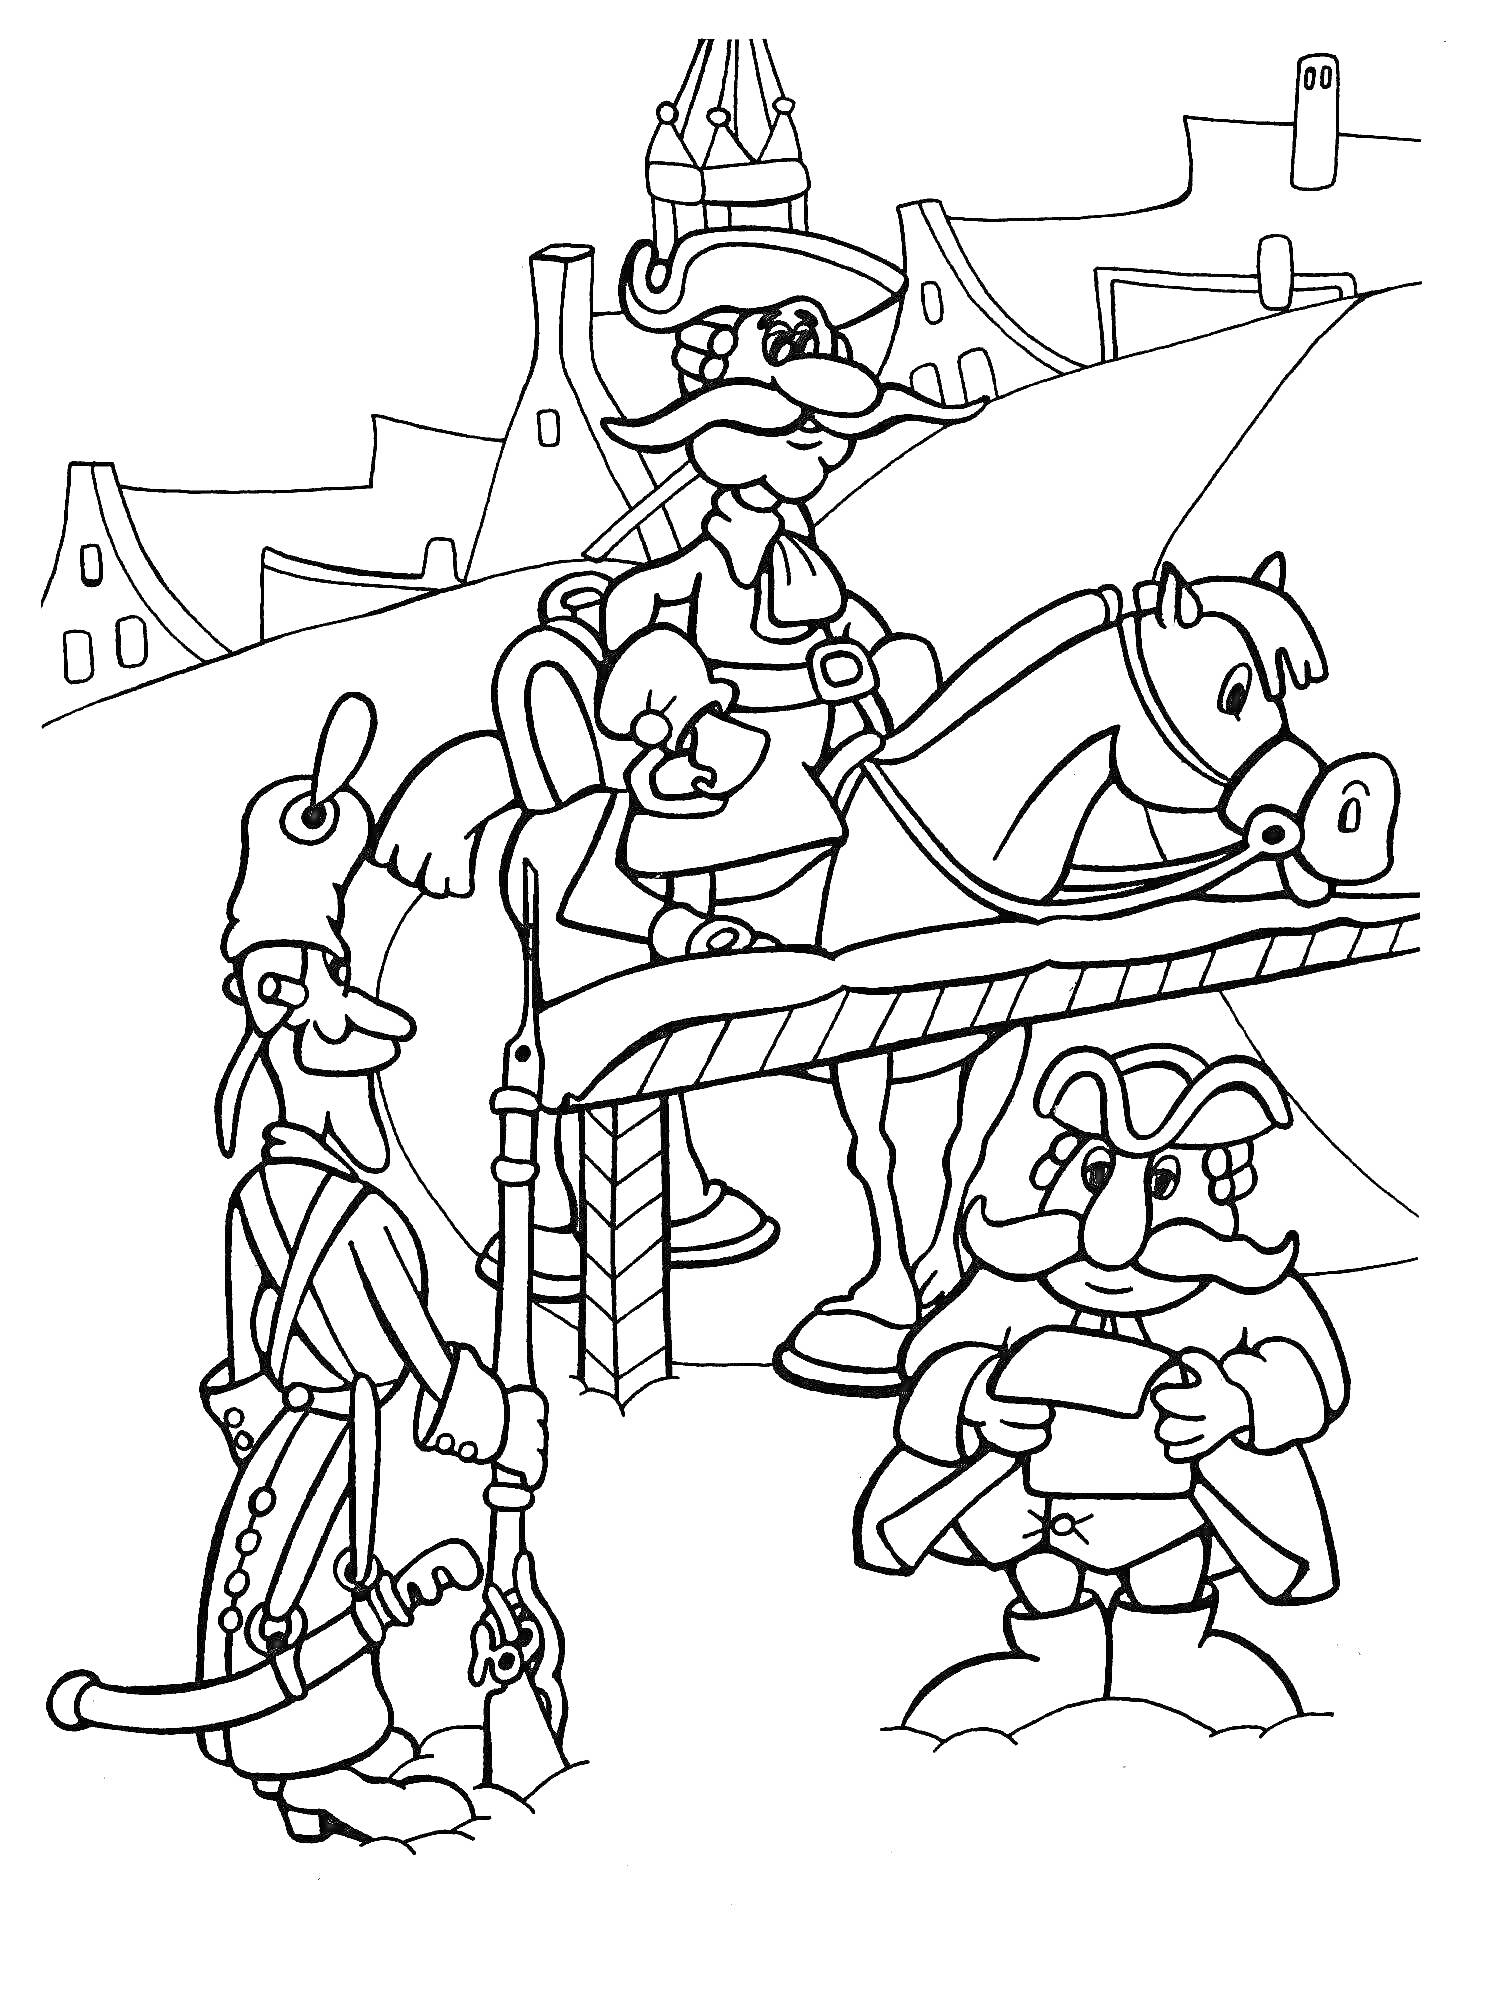 Барон Мюнхгаузен на мосту с лошадью, два солдата и город на заднем плане